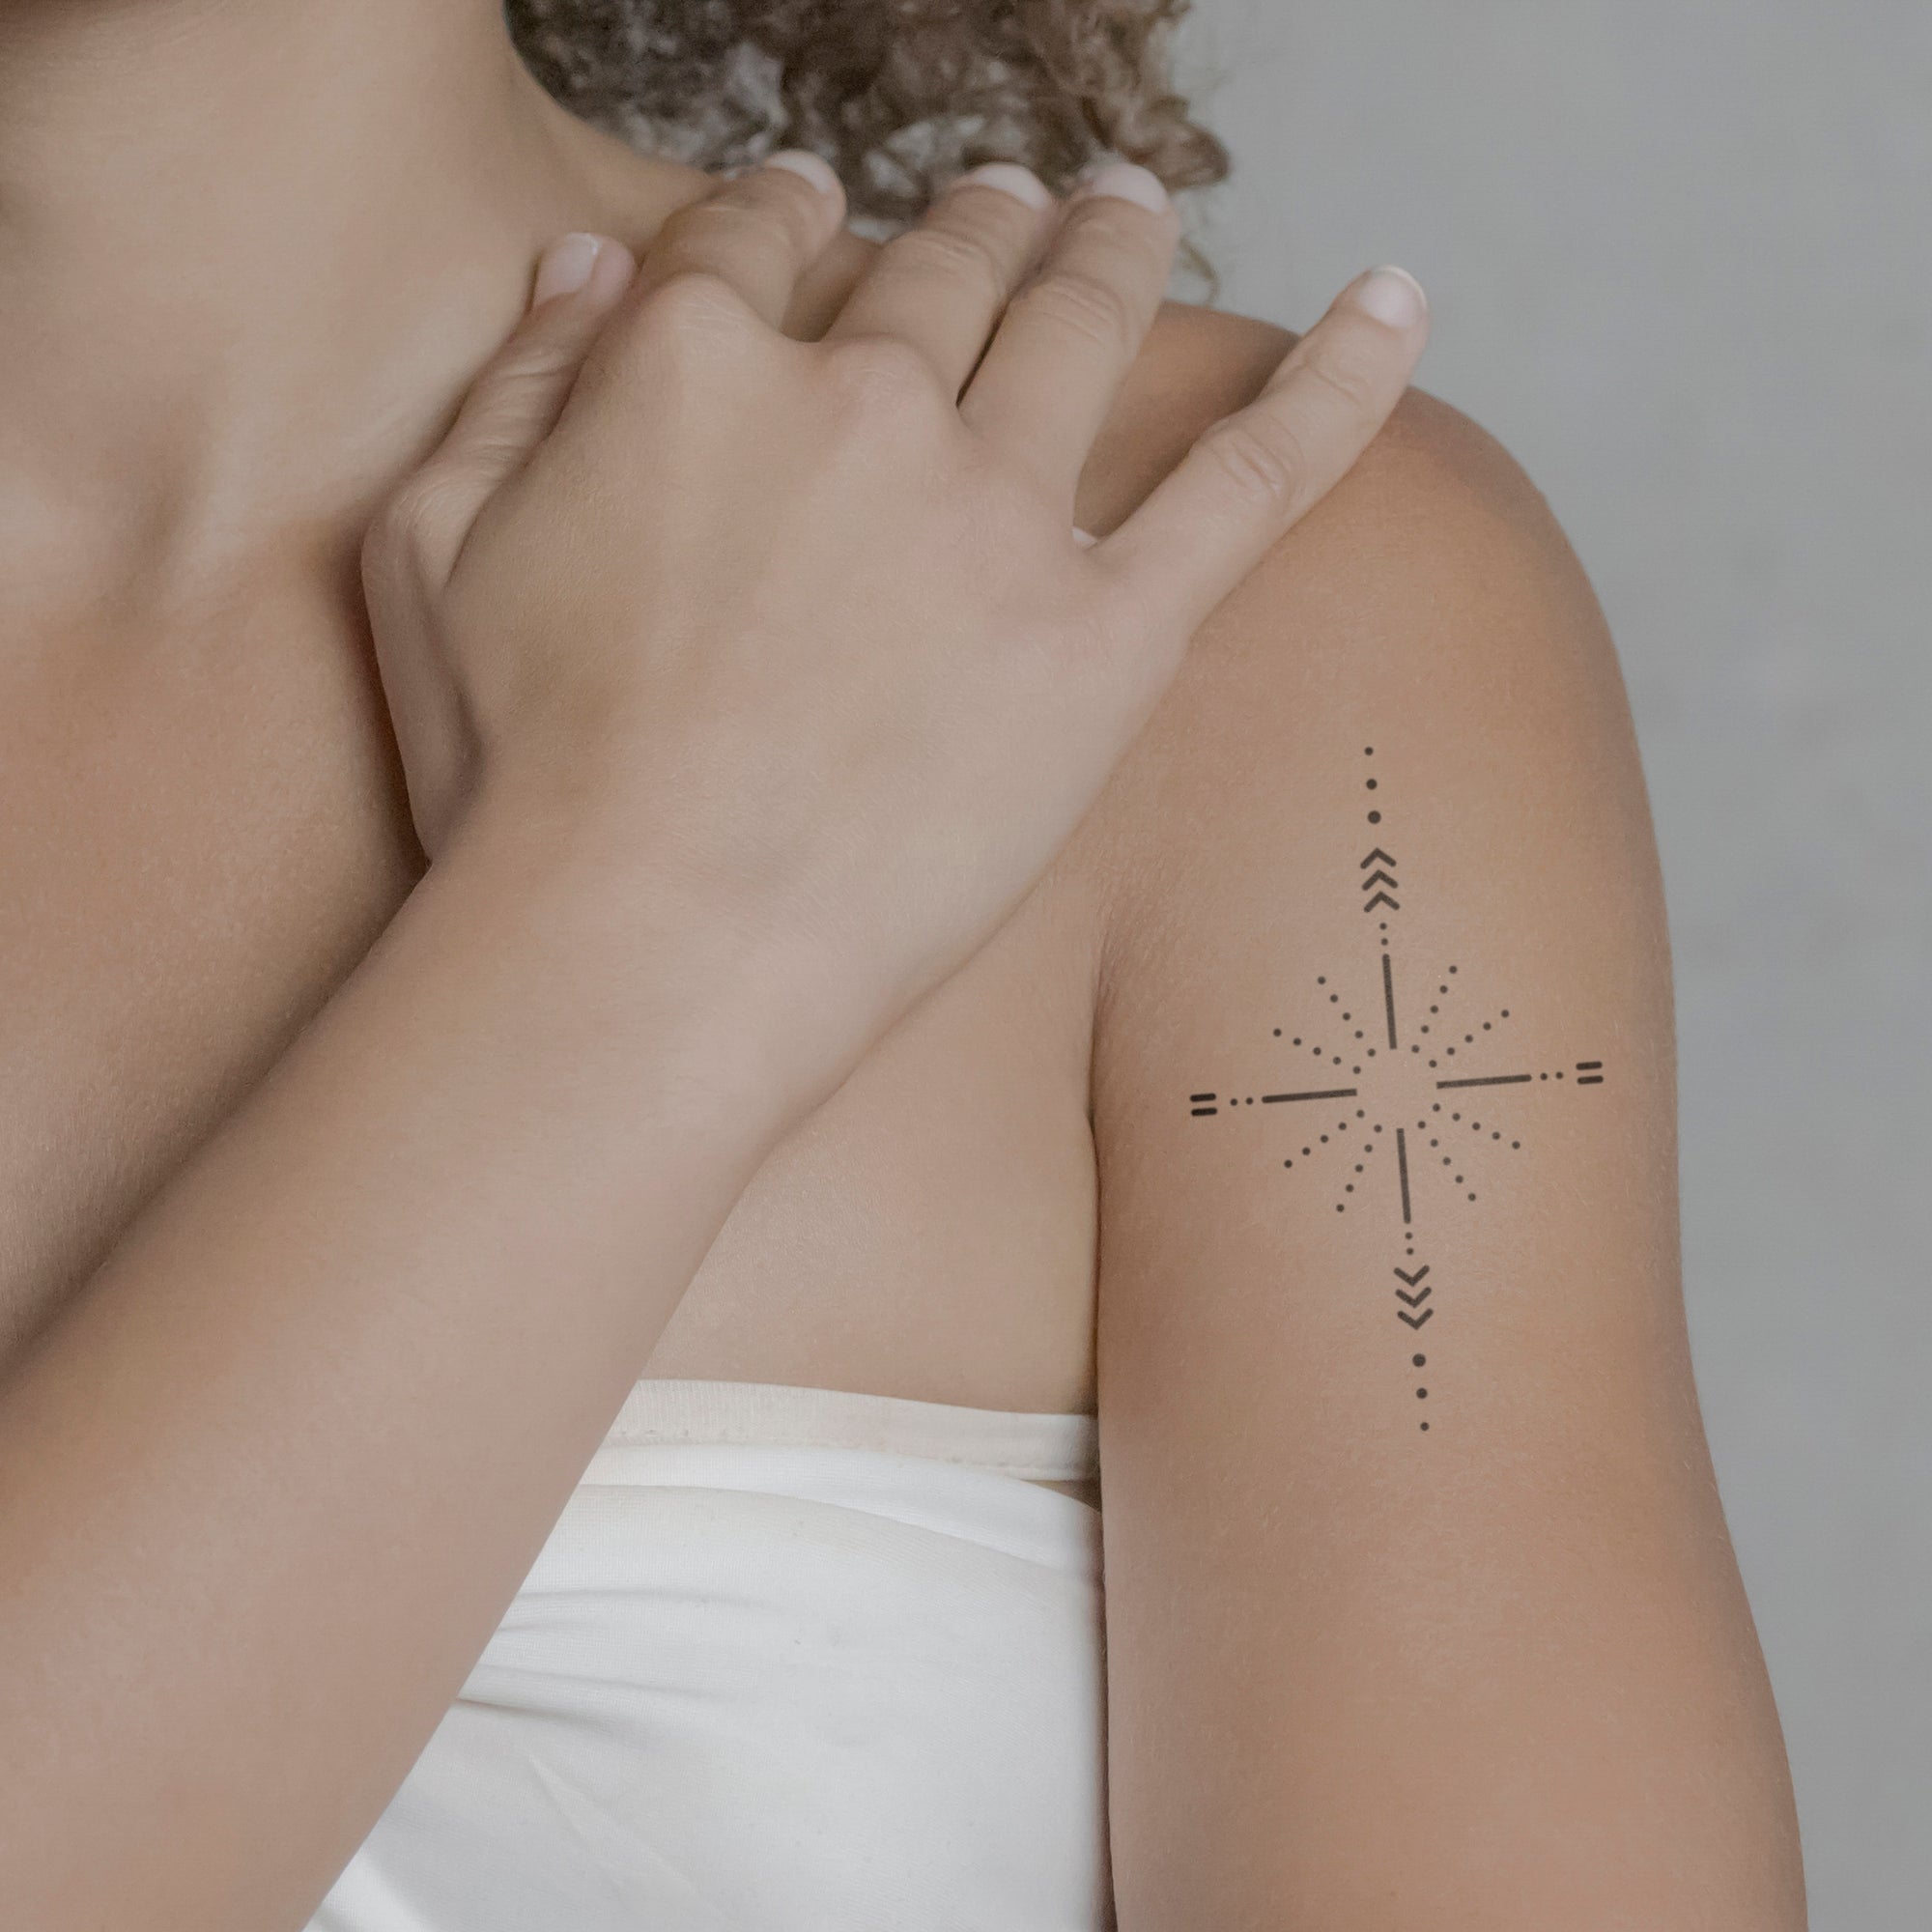 Ornament eines Sternes Tattoo von minink, der Marke für temporäre Tattoos.